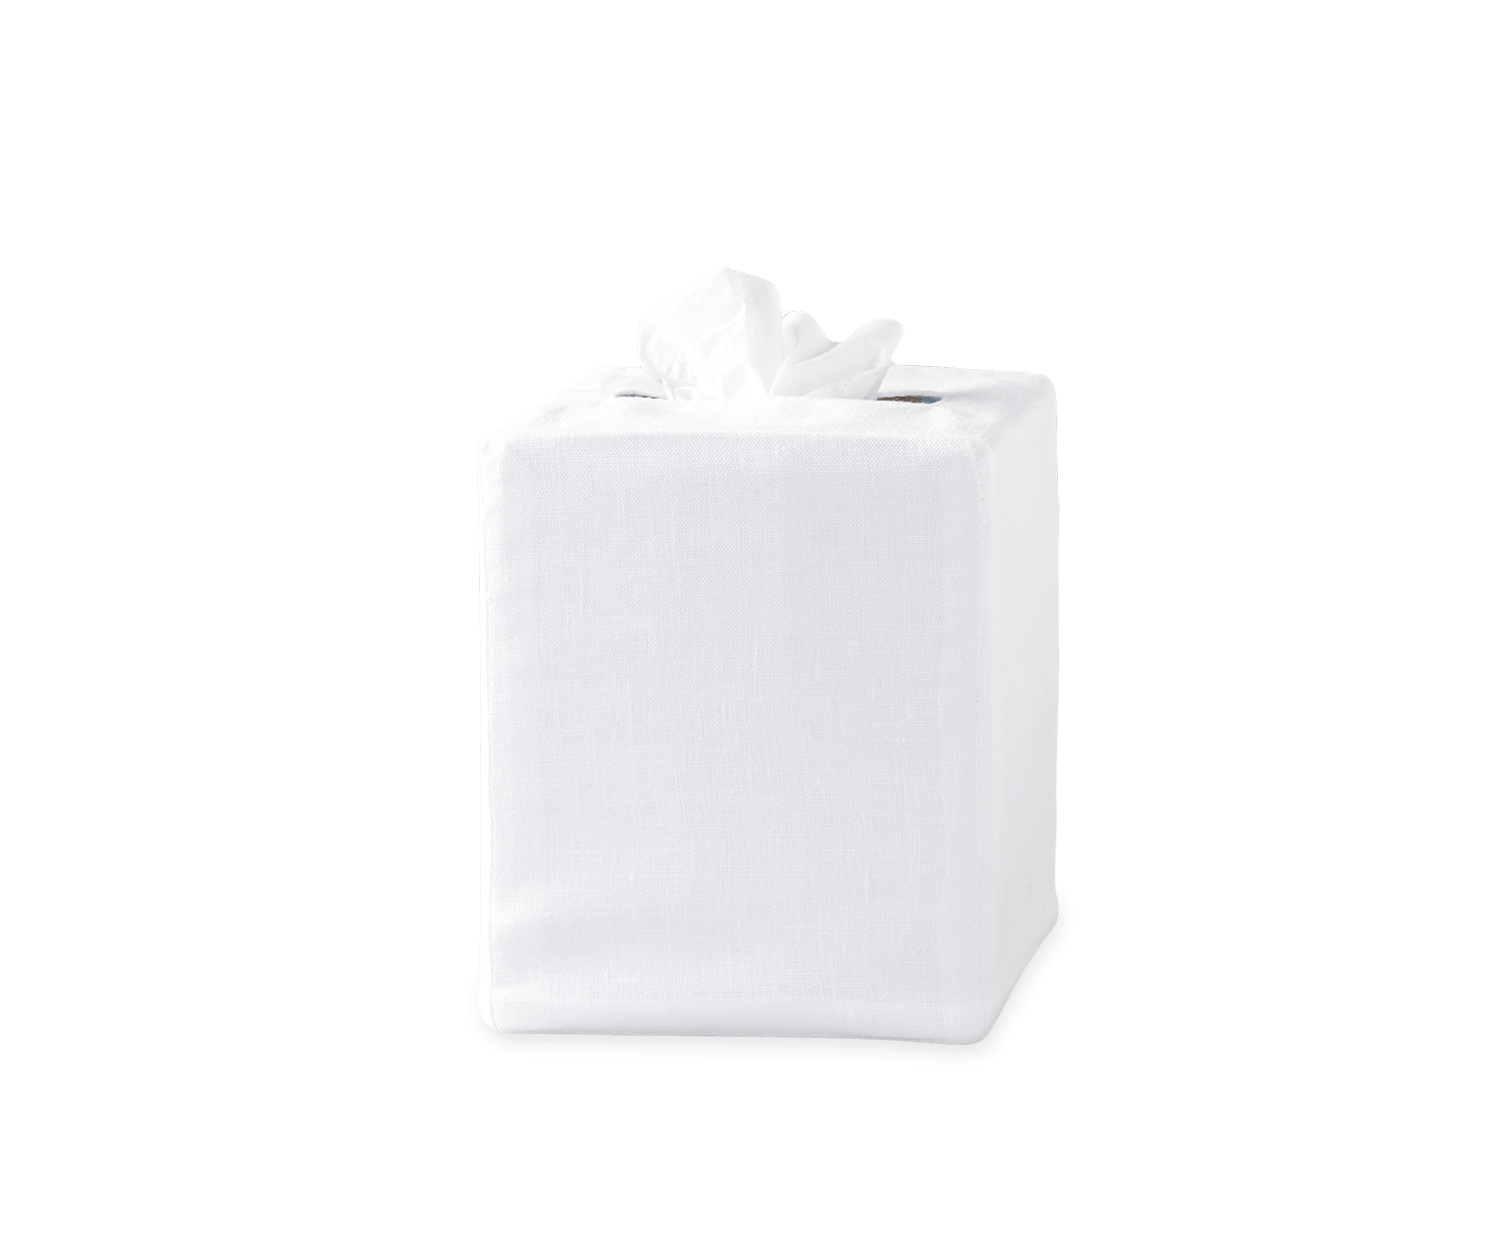 Square Tissue Box Cover - Bone